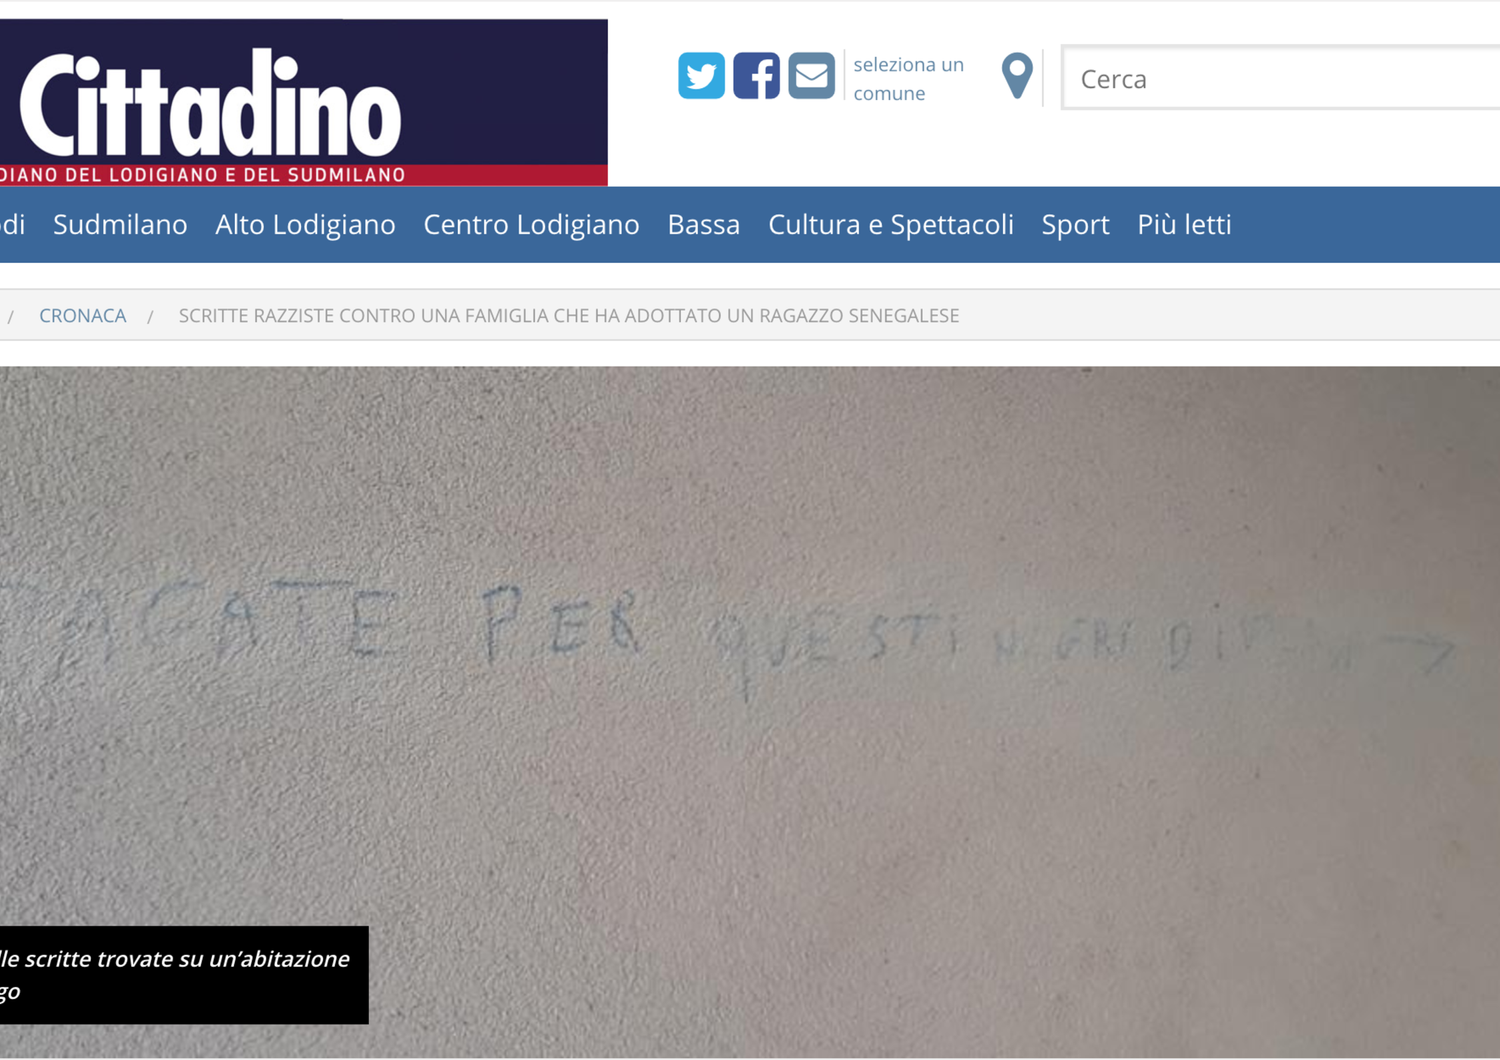 Adottano senegalese, scritte razziste contro famiglia milanese